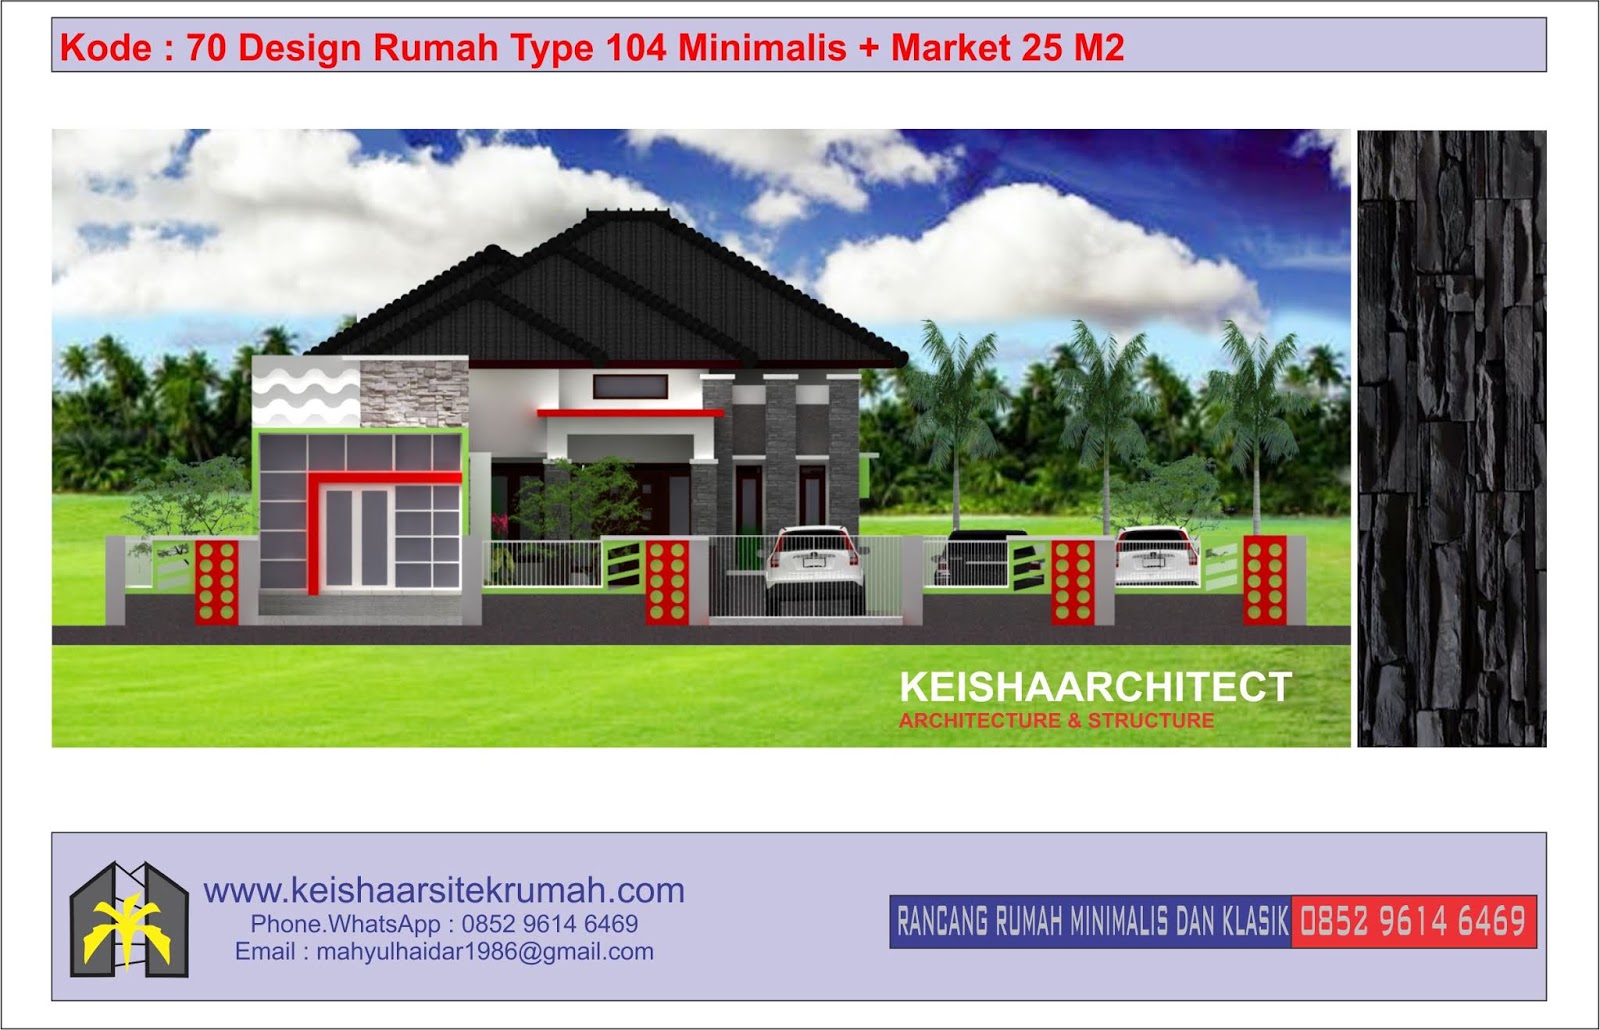 Desain Rumah Minimalis Klasik Dan Rab Tahun 2020 Www